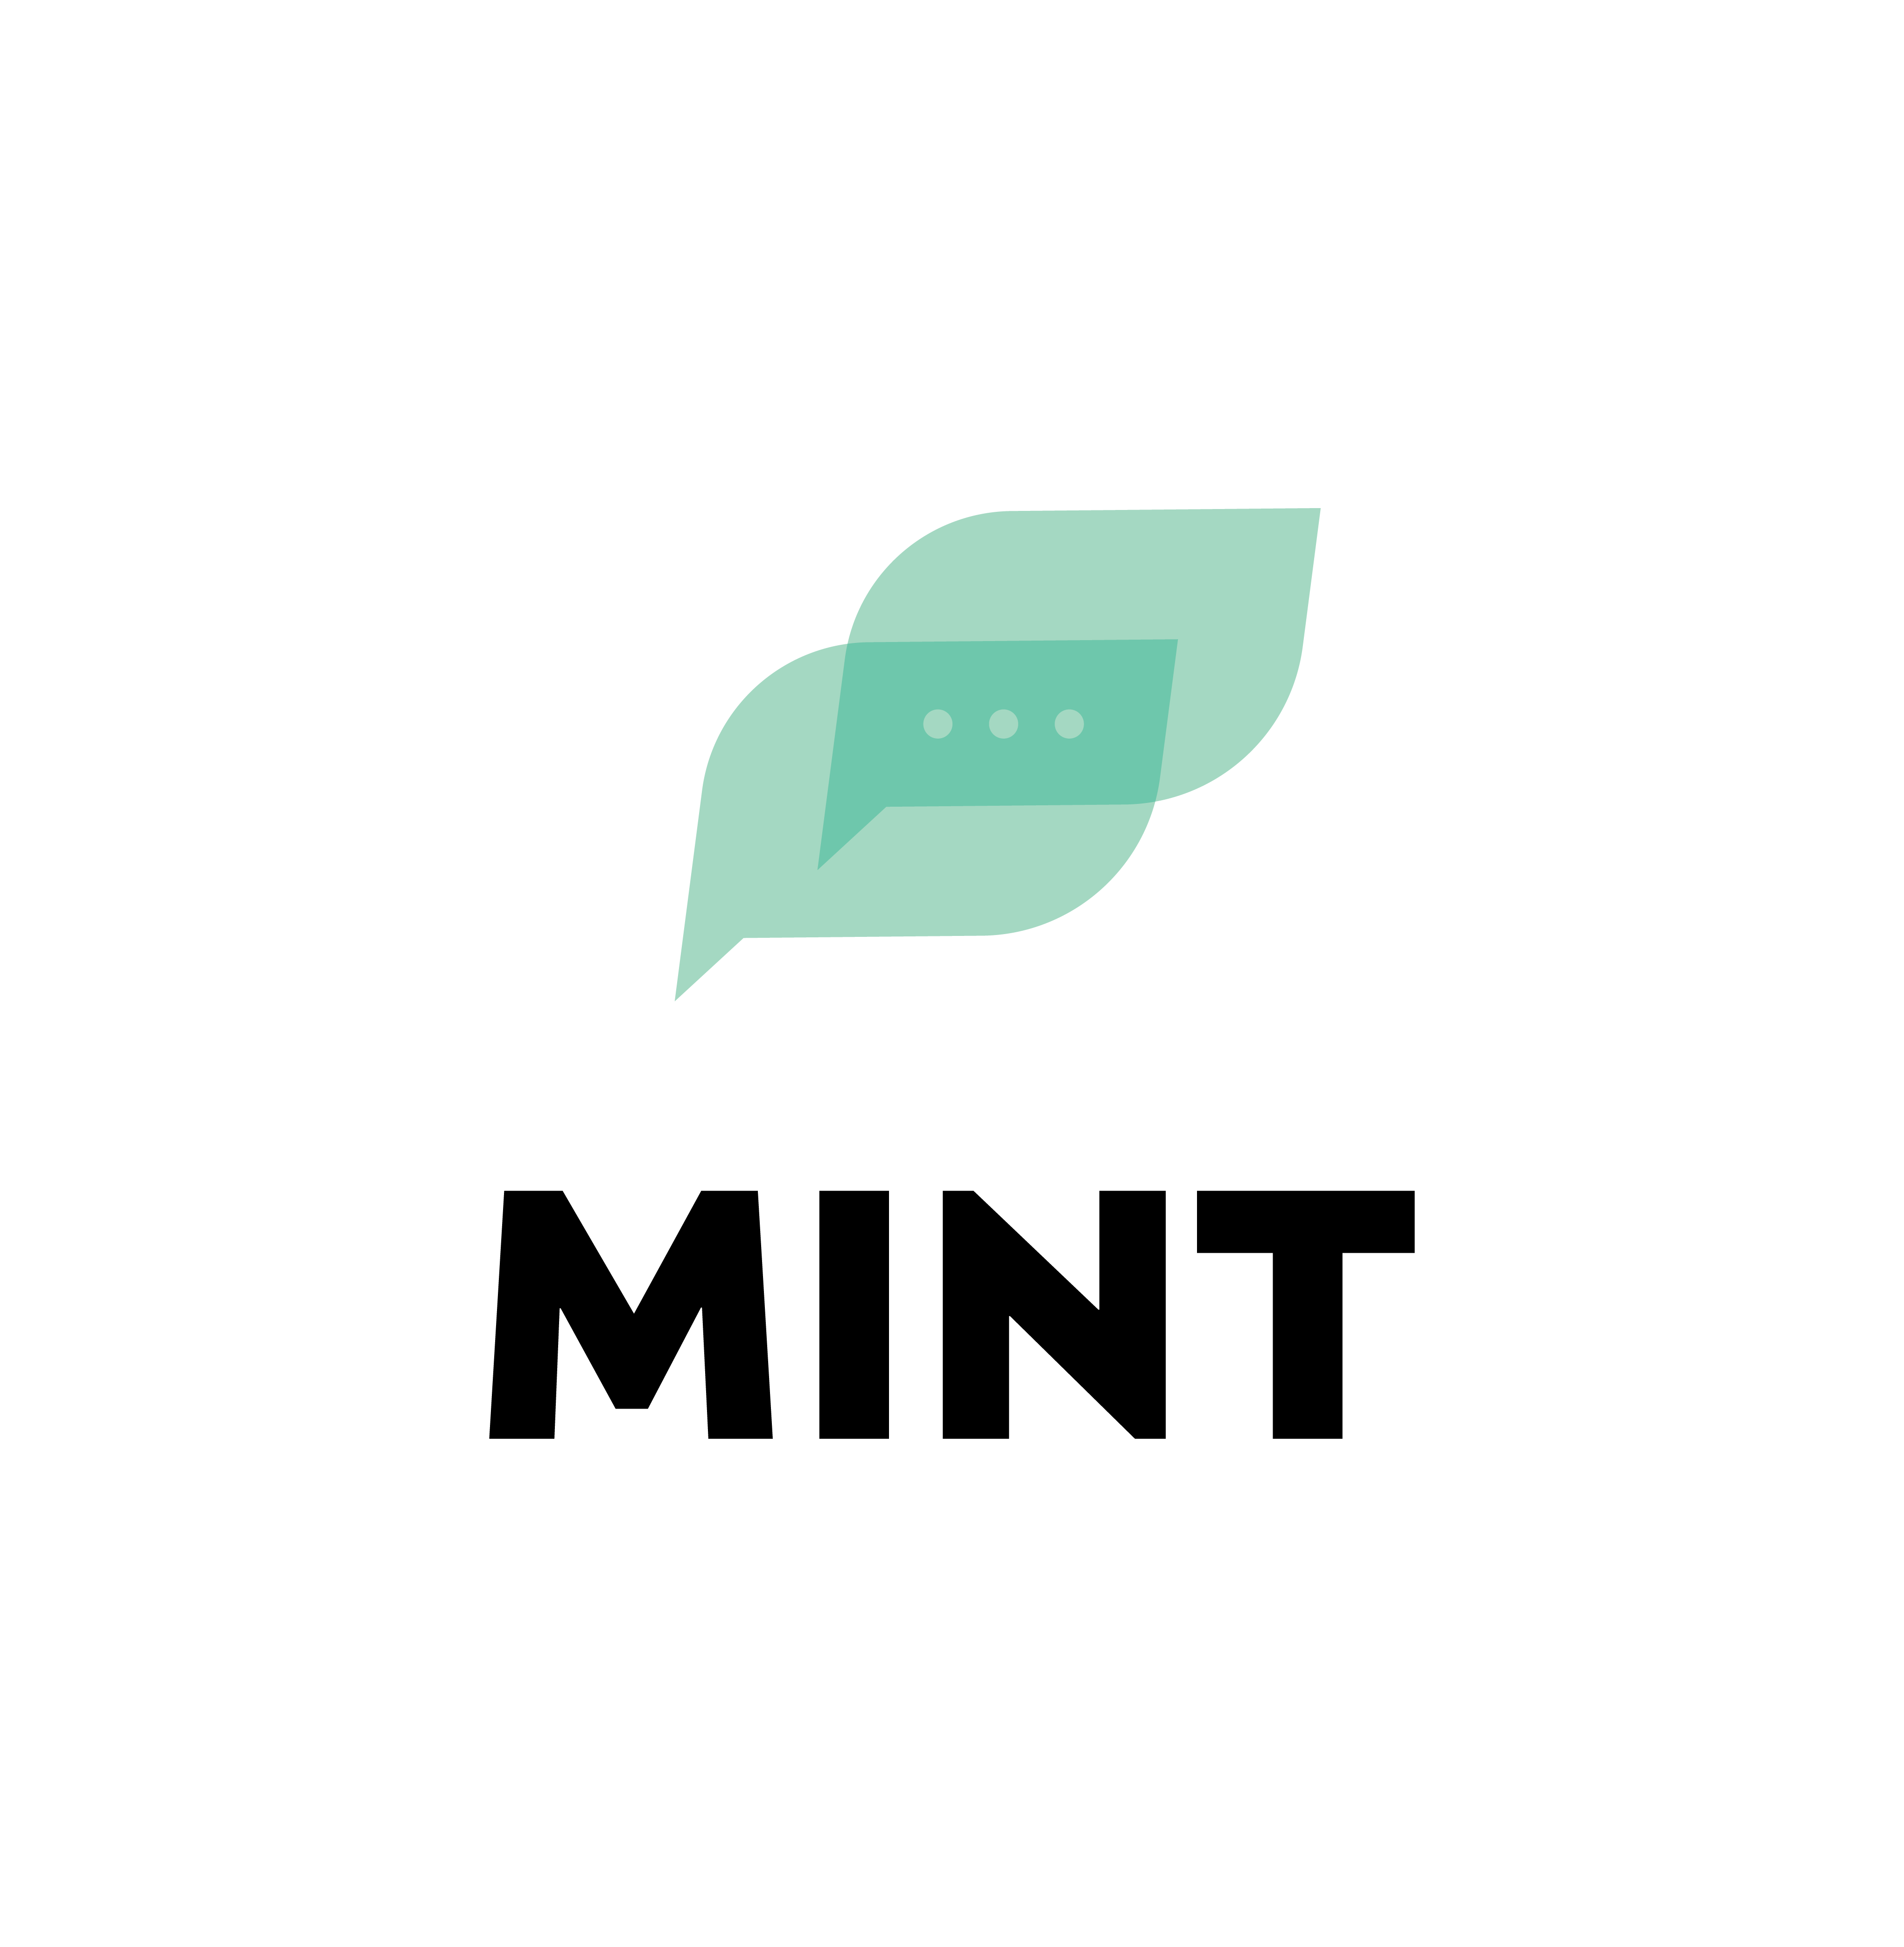 Mint’s cool